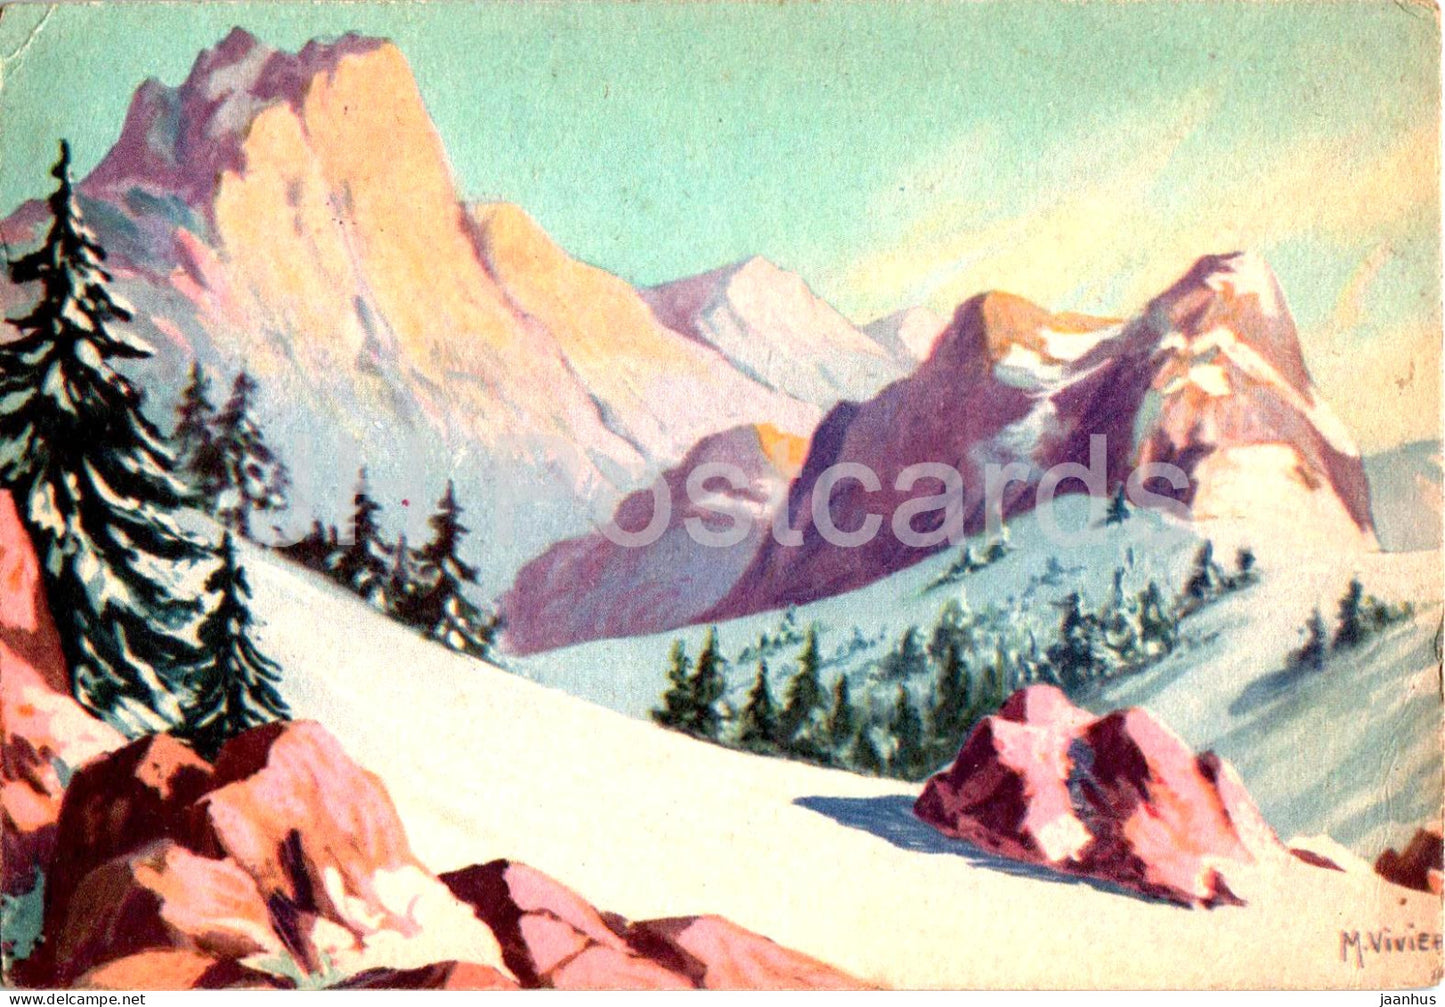 Alpes - Alps - illustration by M. Vivier - old postcard - France - used